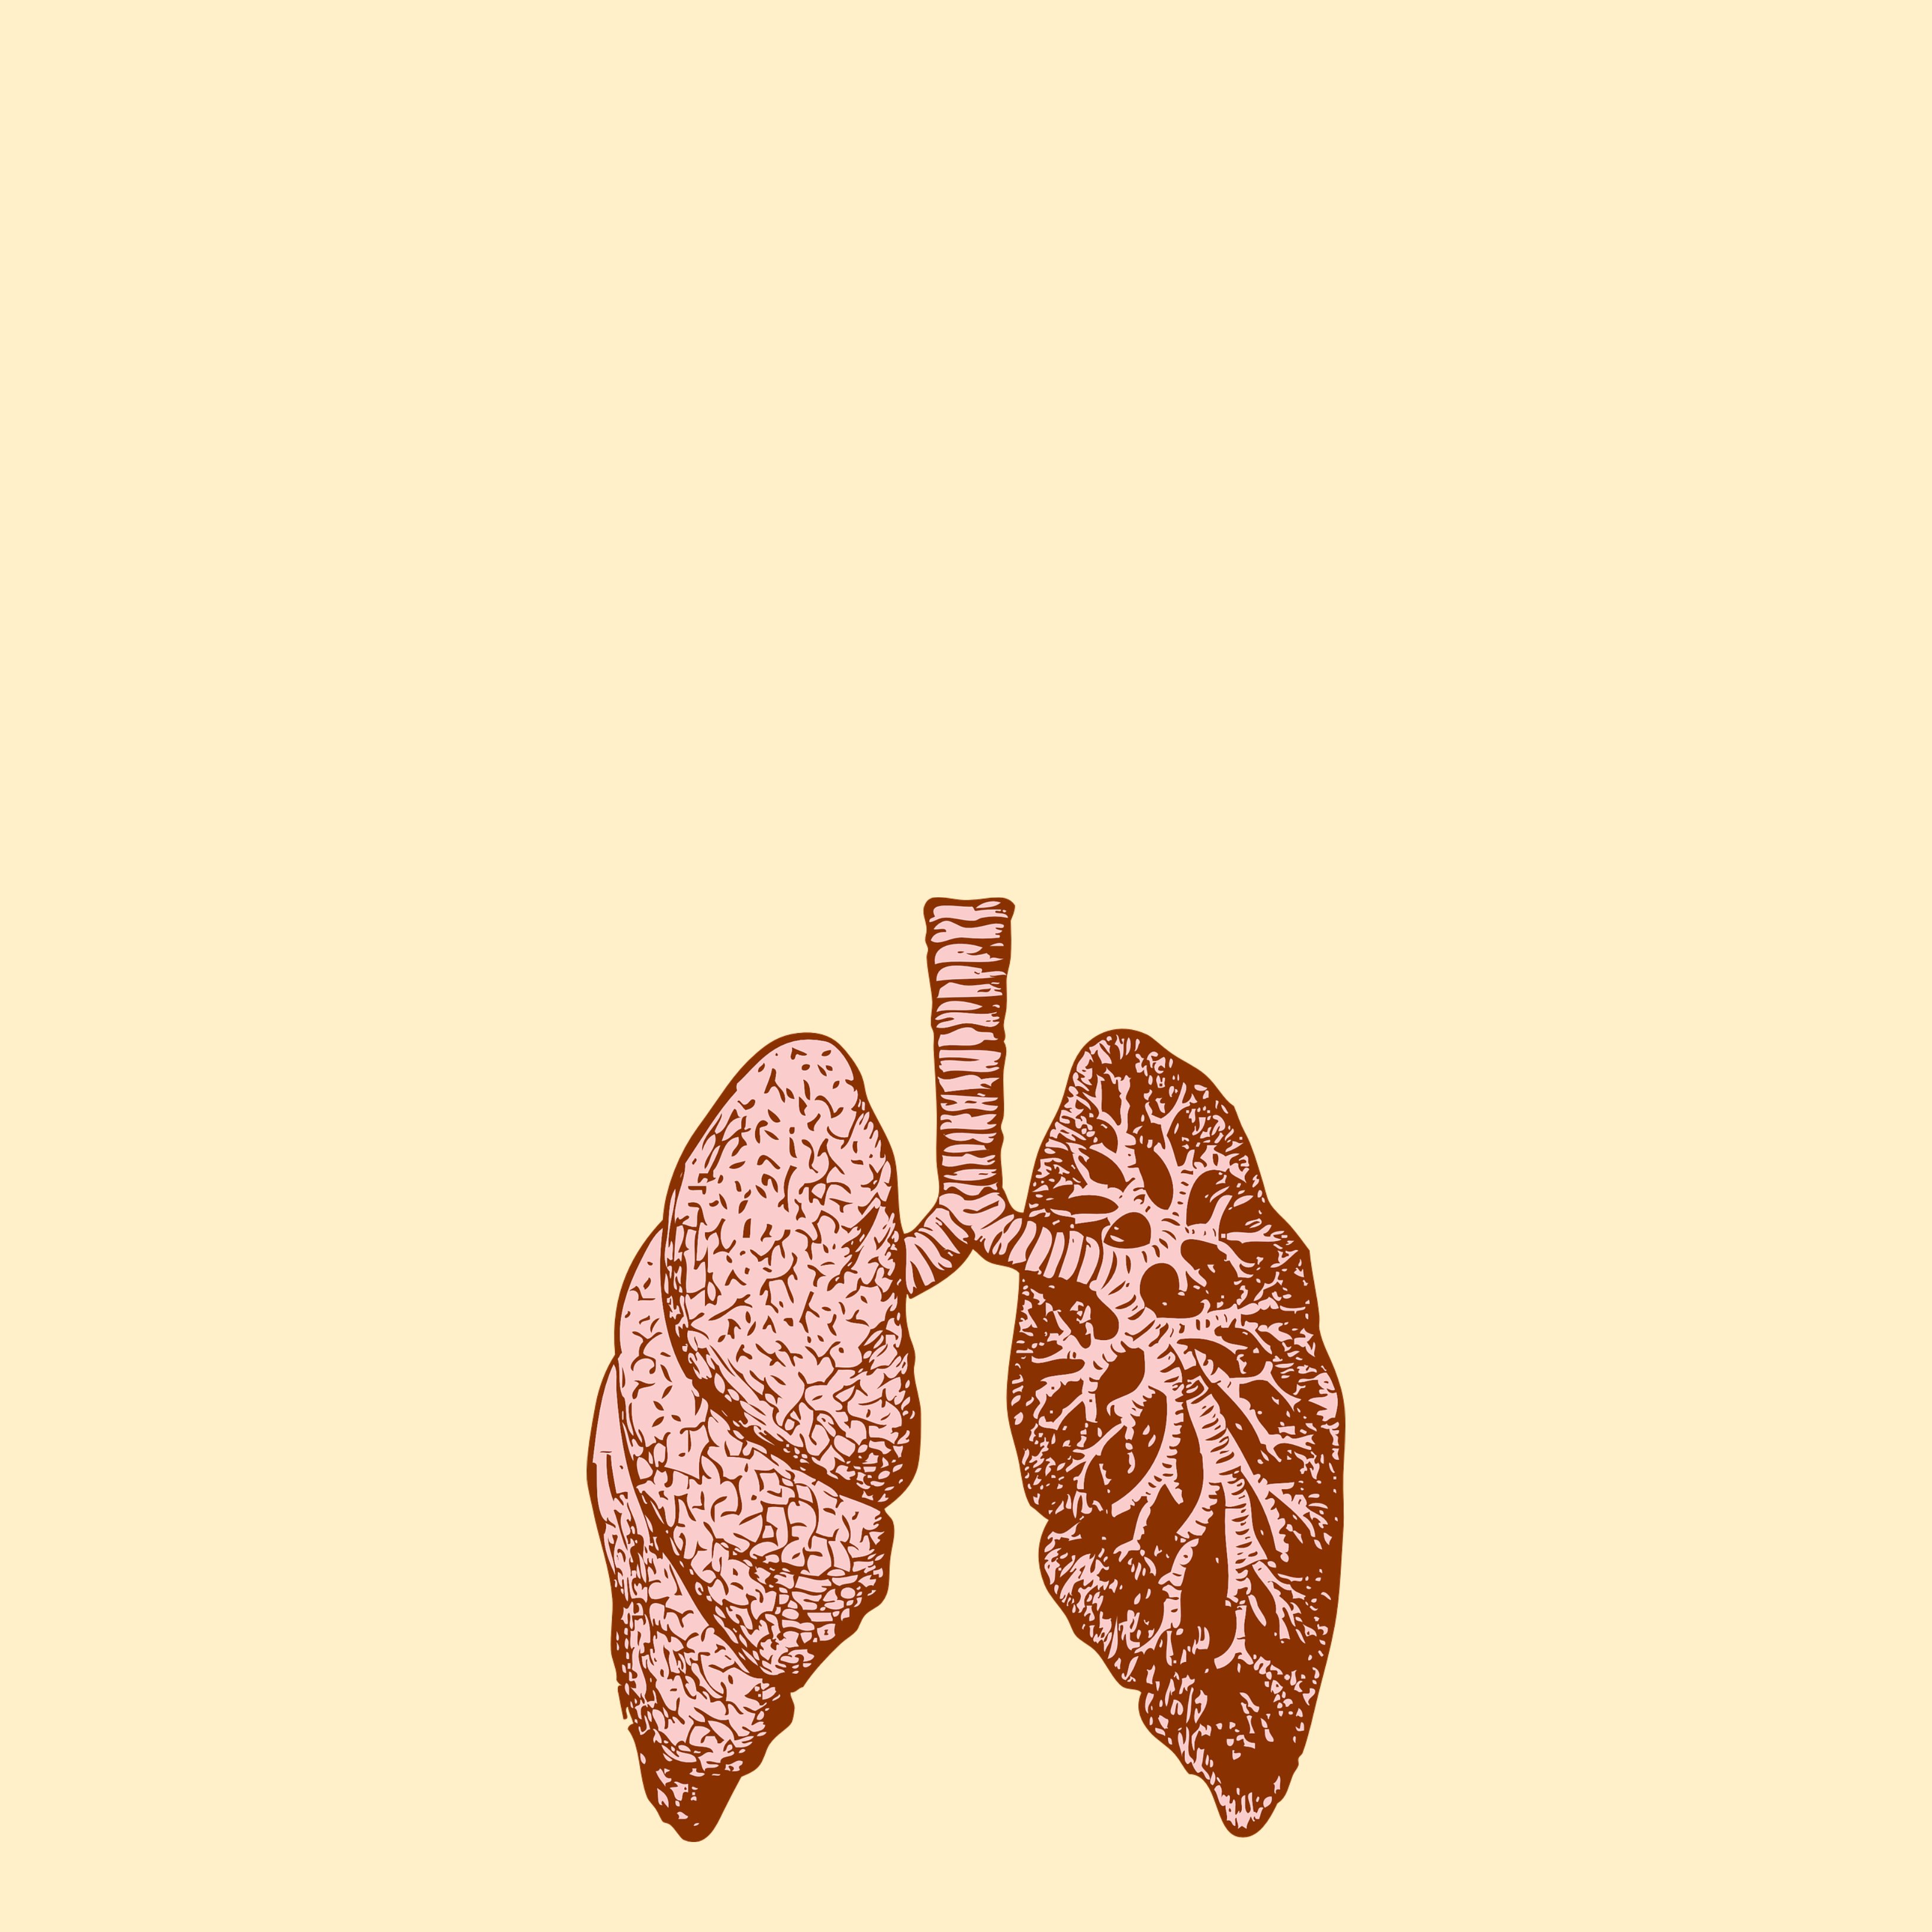 Per què és tan important el programa de cribratge del càncer del pulmó